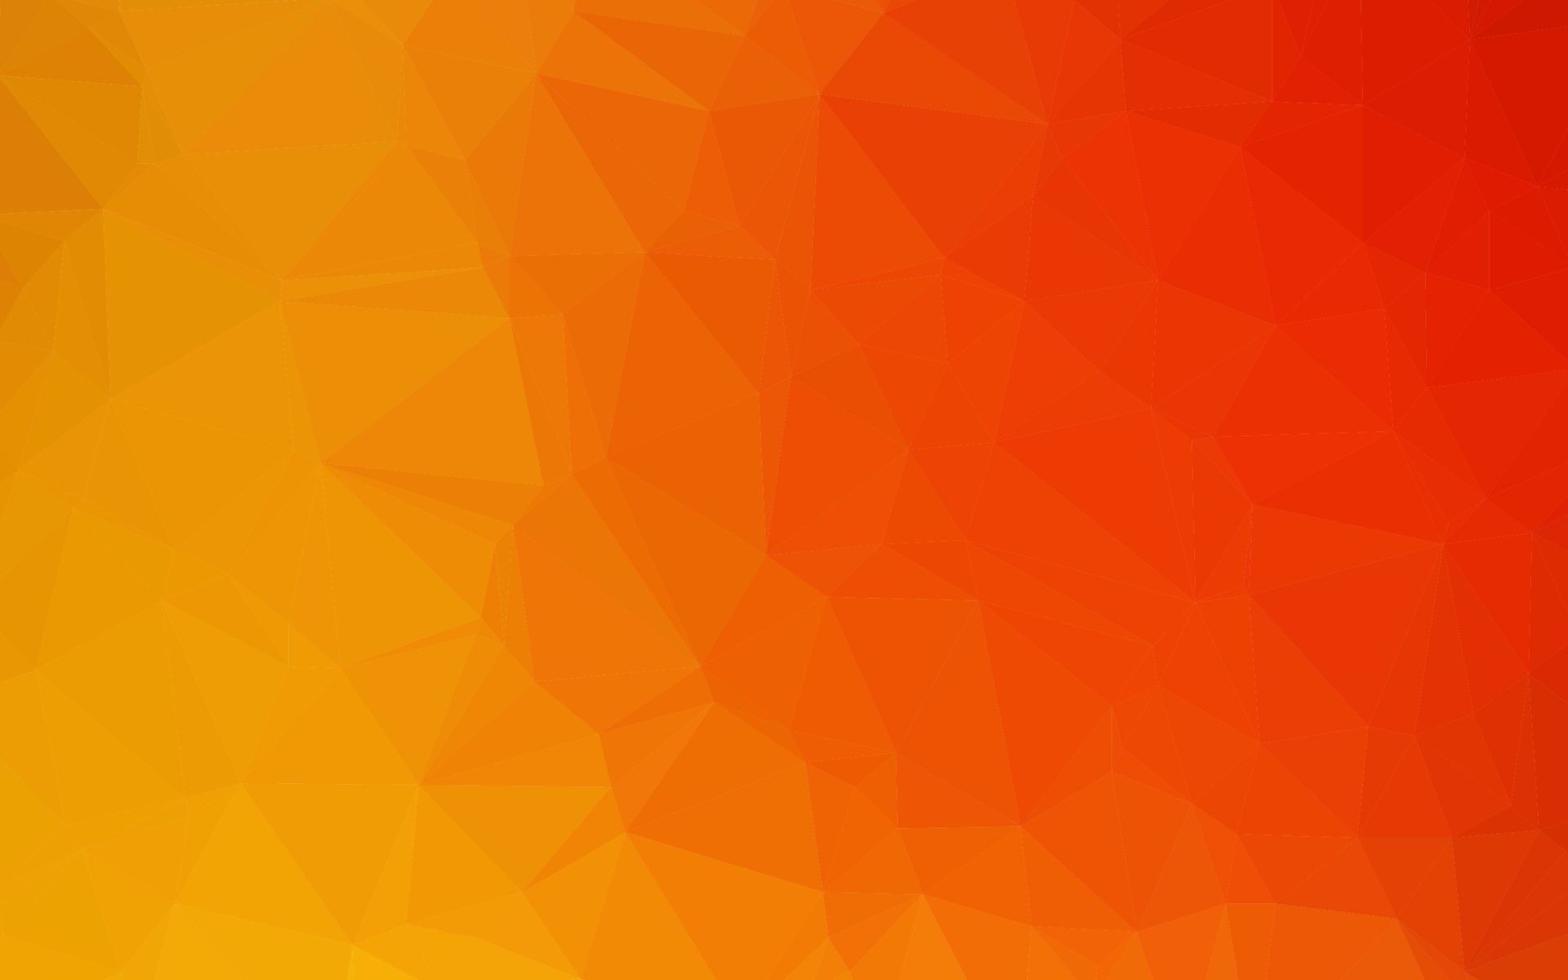 padrão poligonal de vetor amarelo e laranja claro.